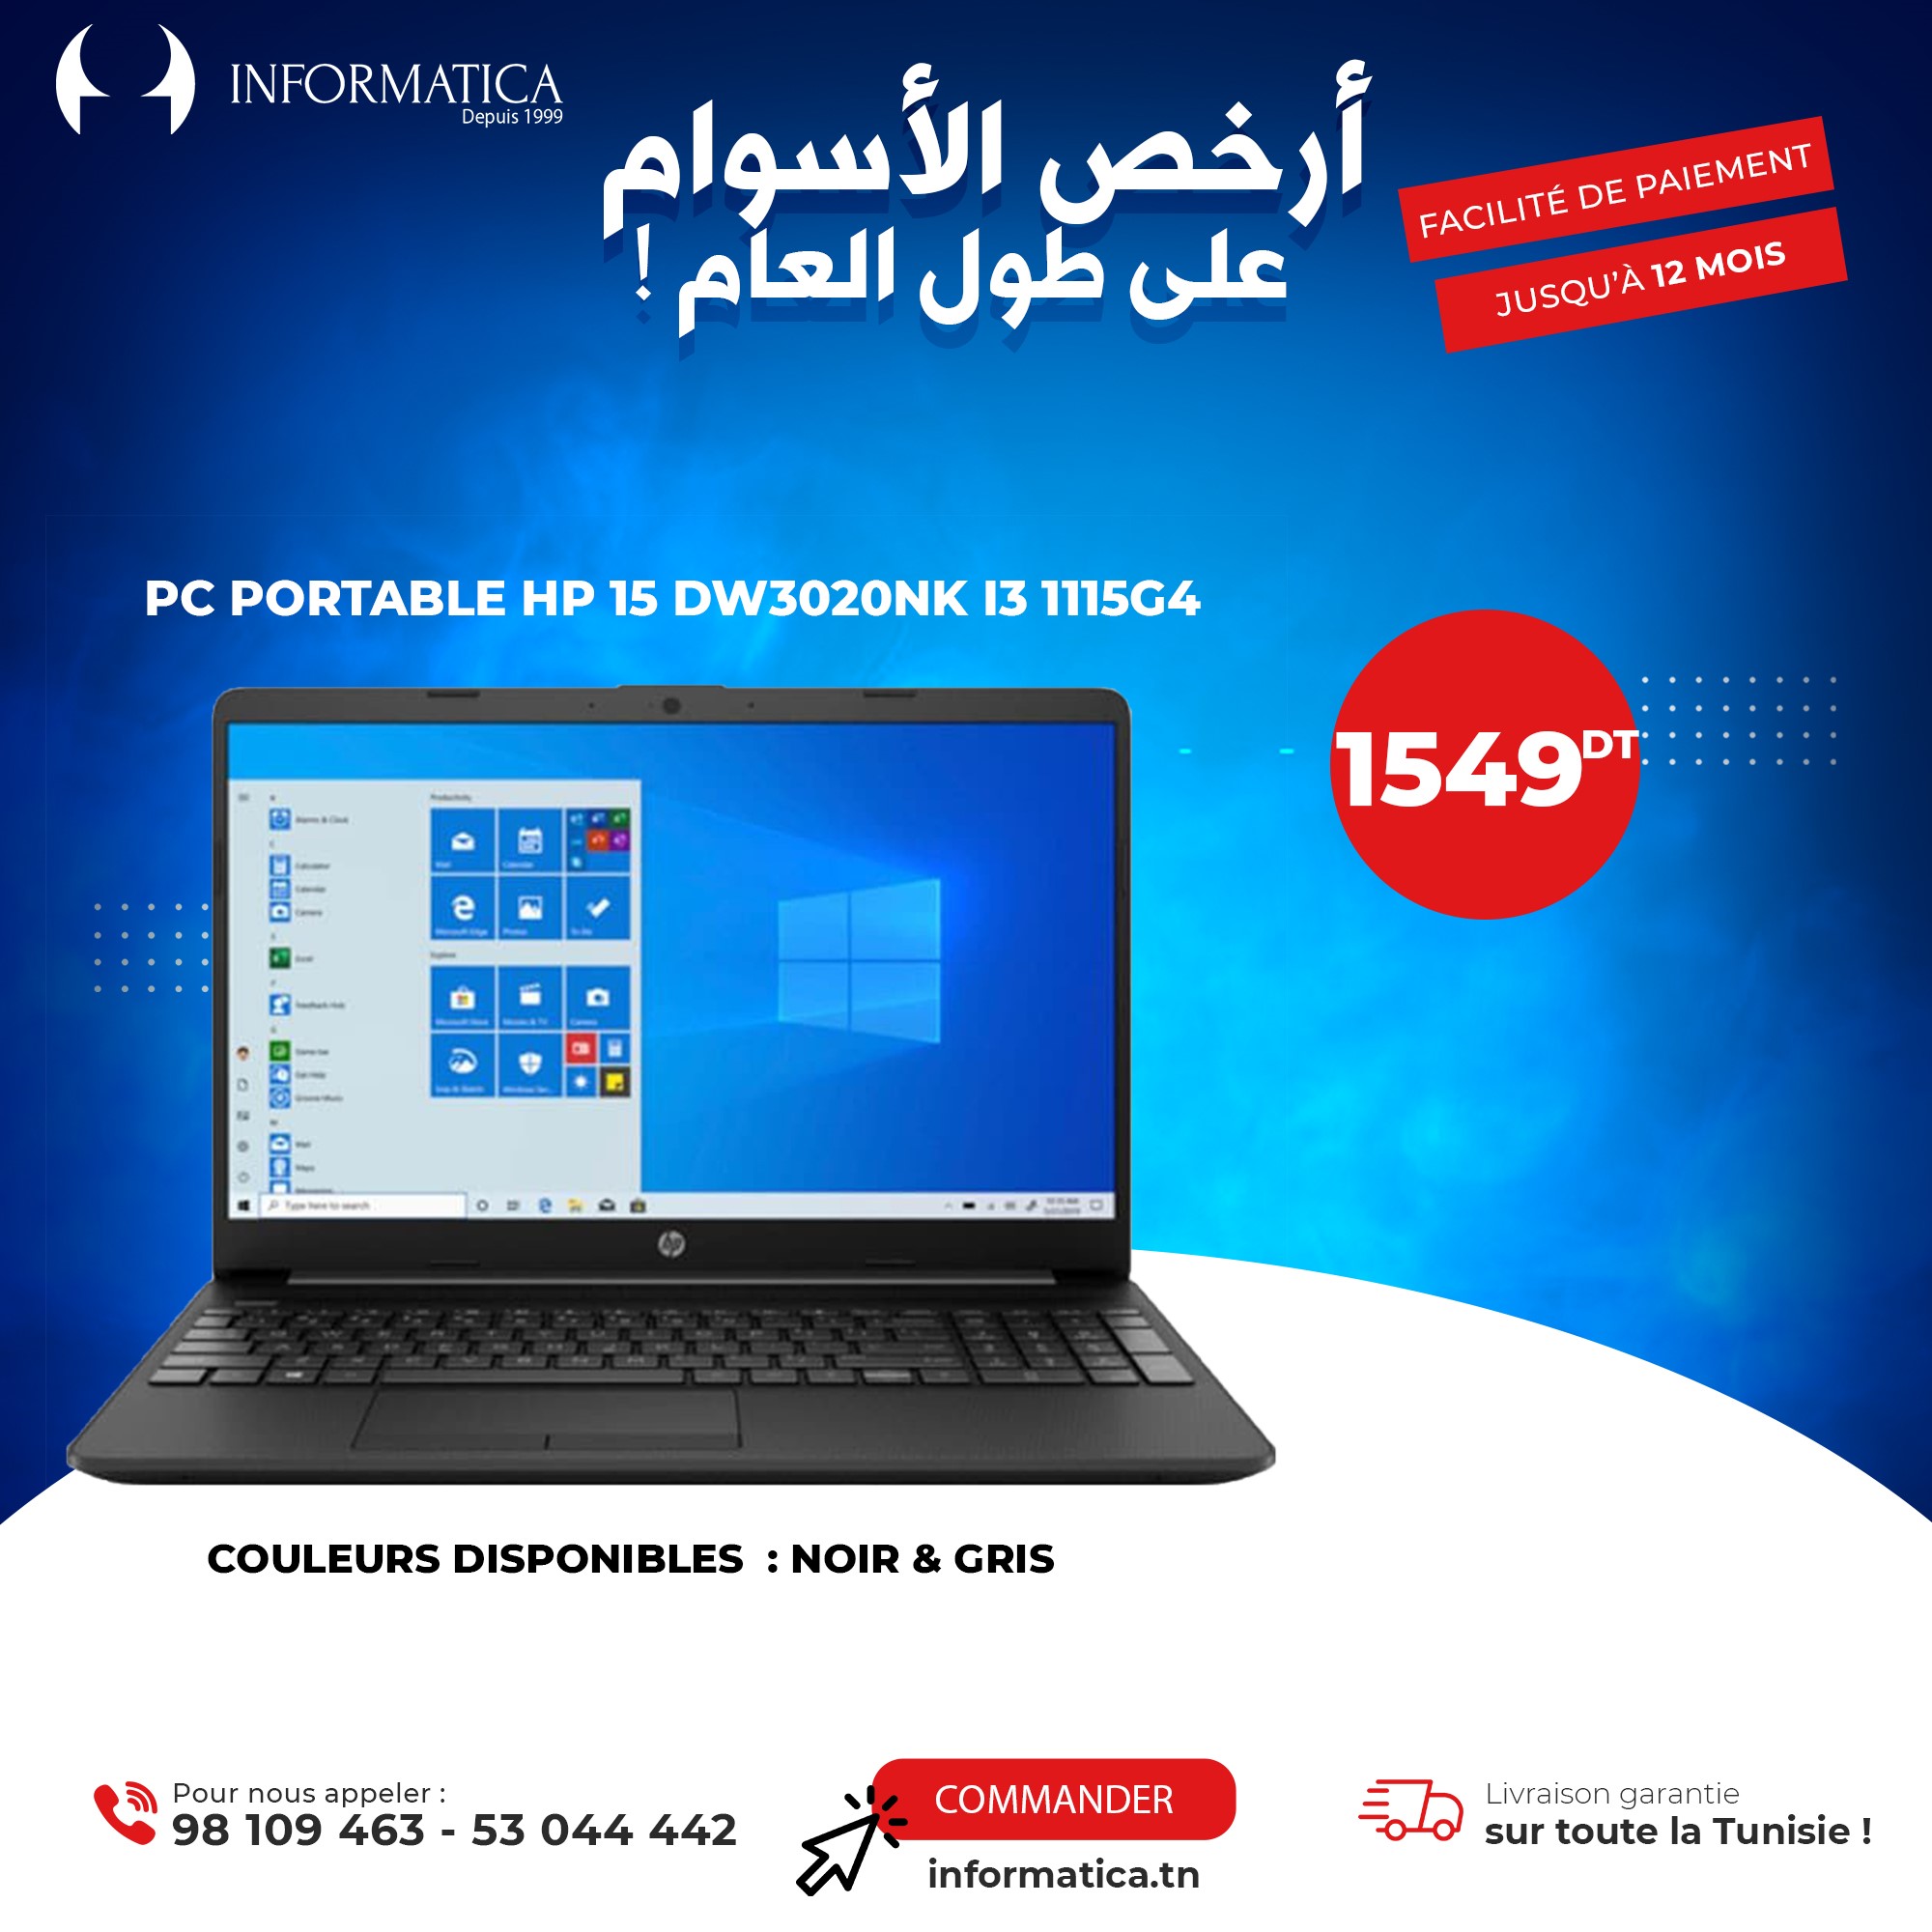 CLAVIER PC PORTABLE HP15 - stie tunisie